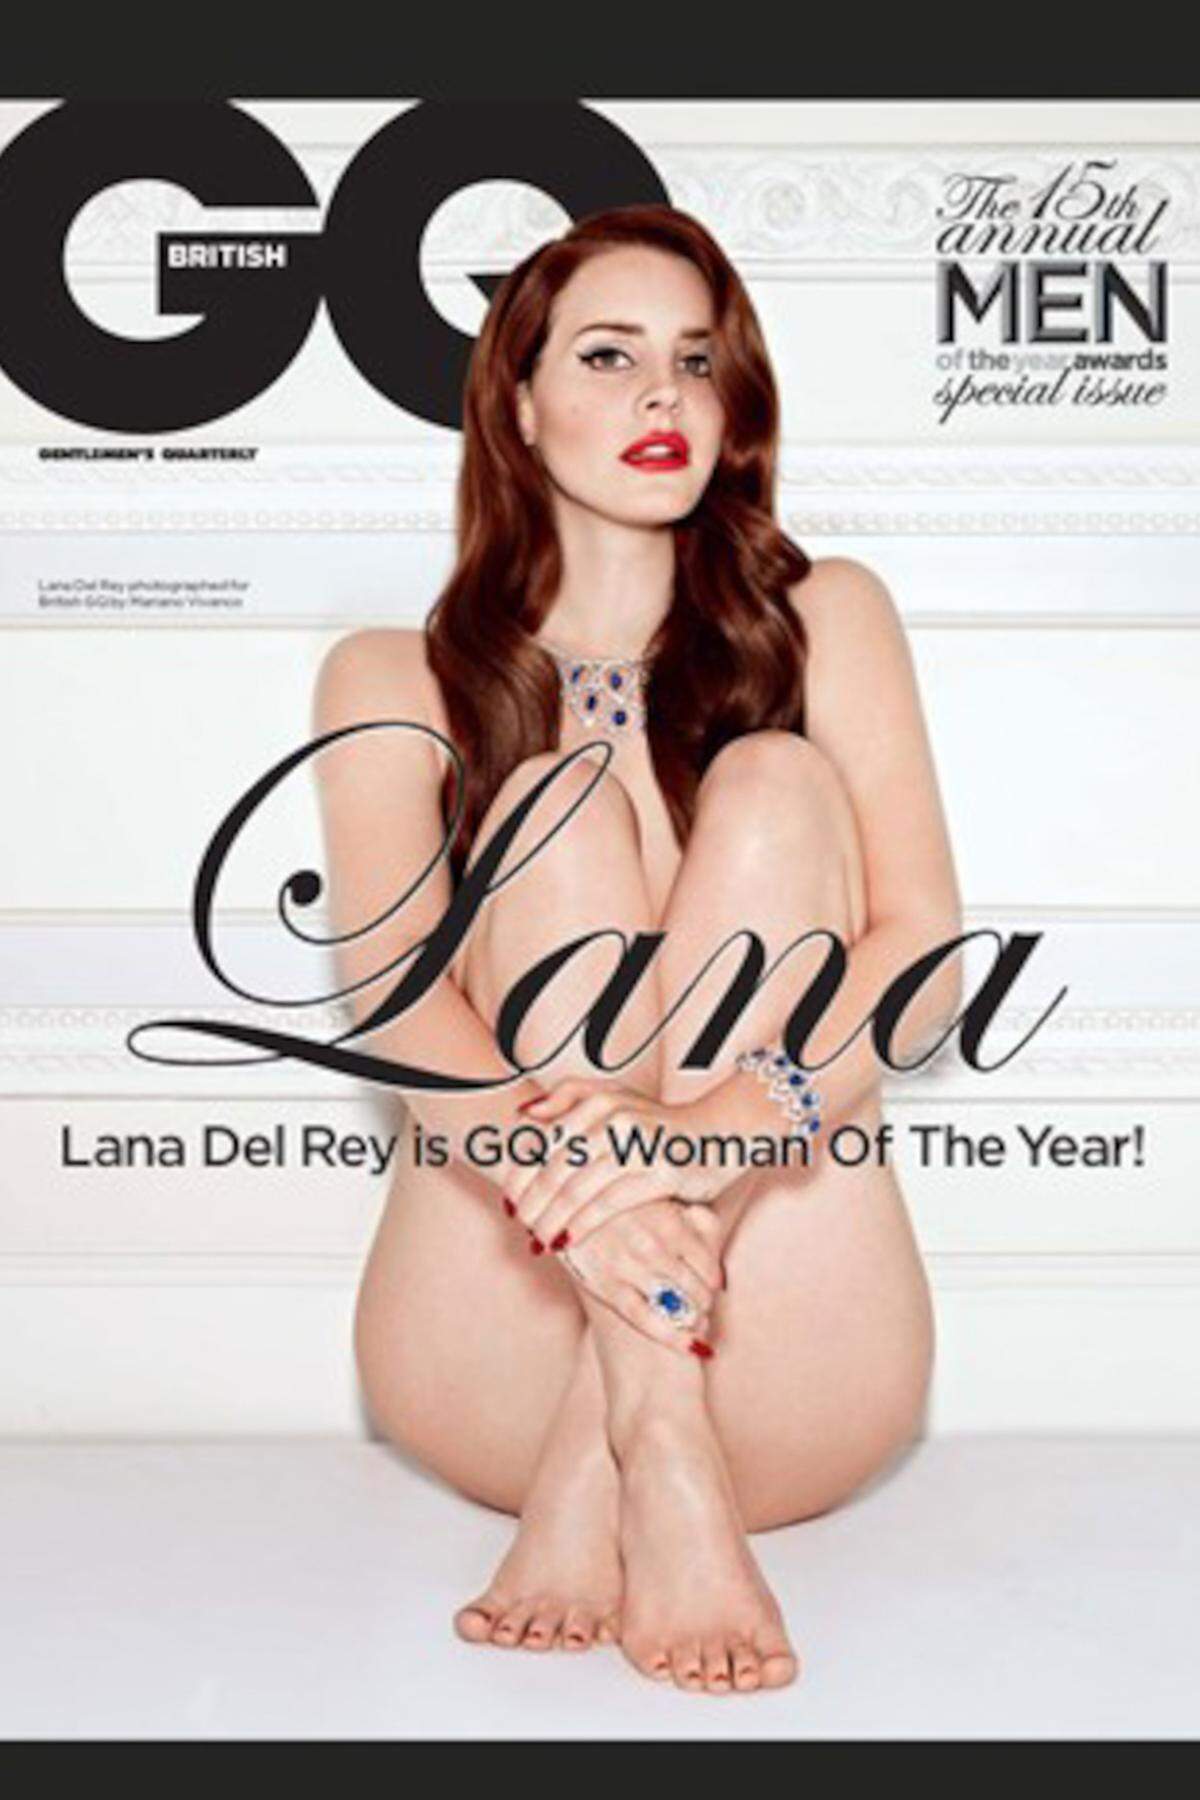 Die Sängerin Lana Del Rey hat sich für das Oktober-Cover des Männermagazins "GQ" ausgezogen. Der Fotograf Mariano Vivanco hat die "Frau des Jahres" dafür in Szene gesetzt. Für ein Sujet musste sie sich auch von einem Herren ausgreifen lassen.